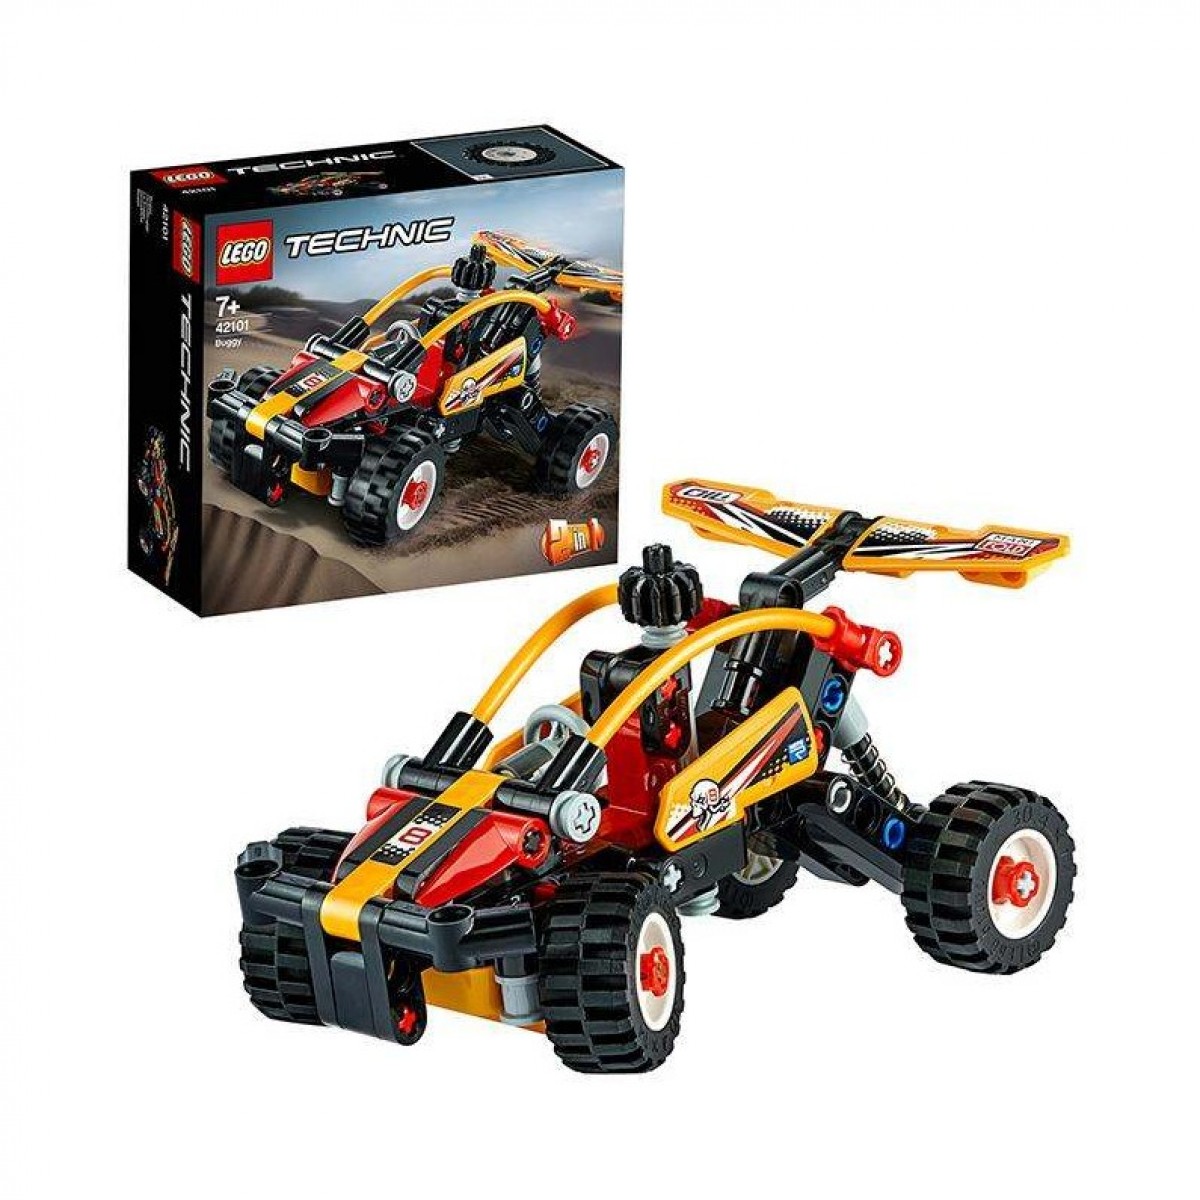 LEGO樂高機械系列 沙灘越野車42101拼插積木玩具